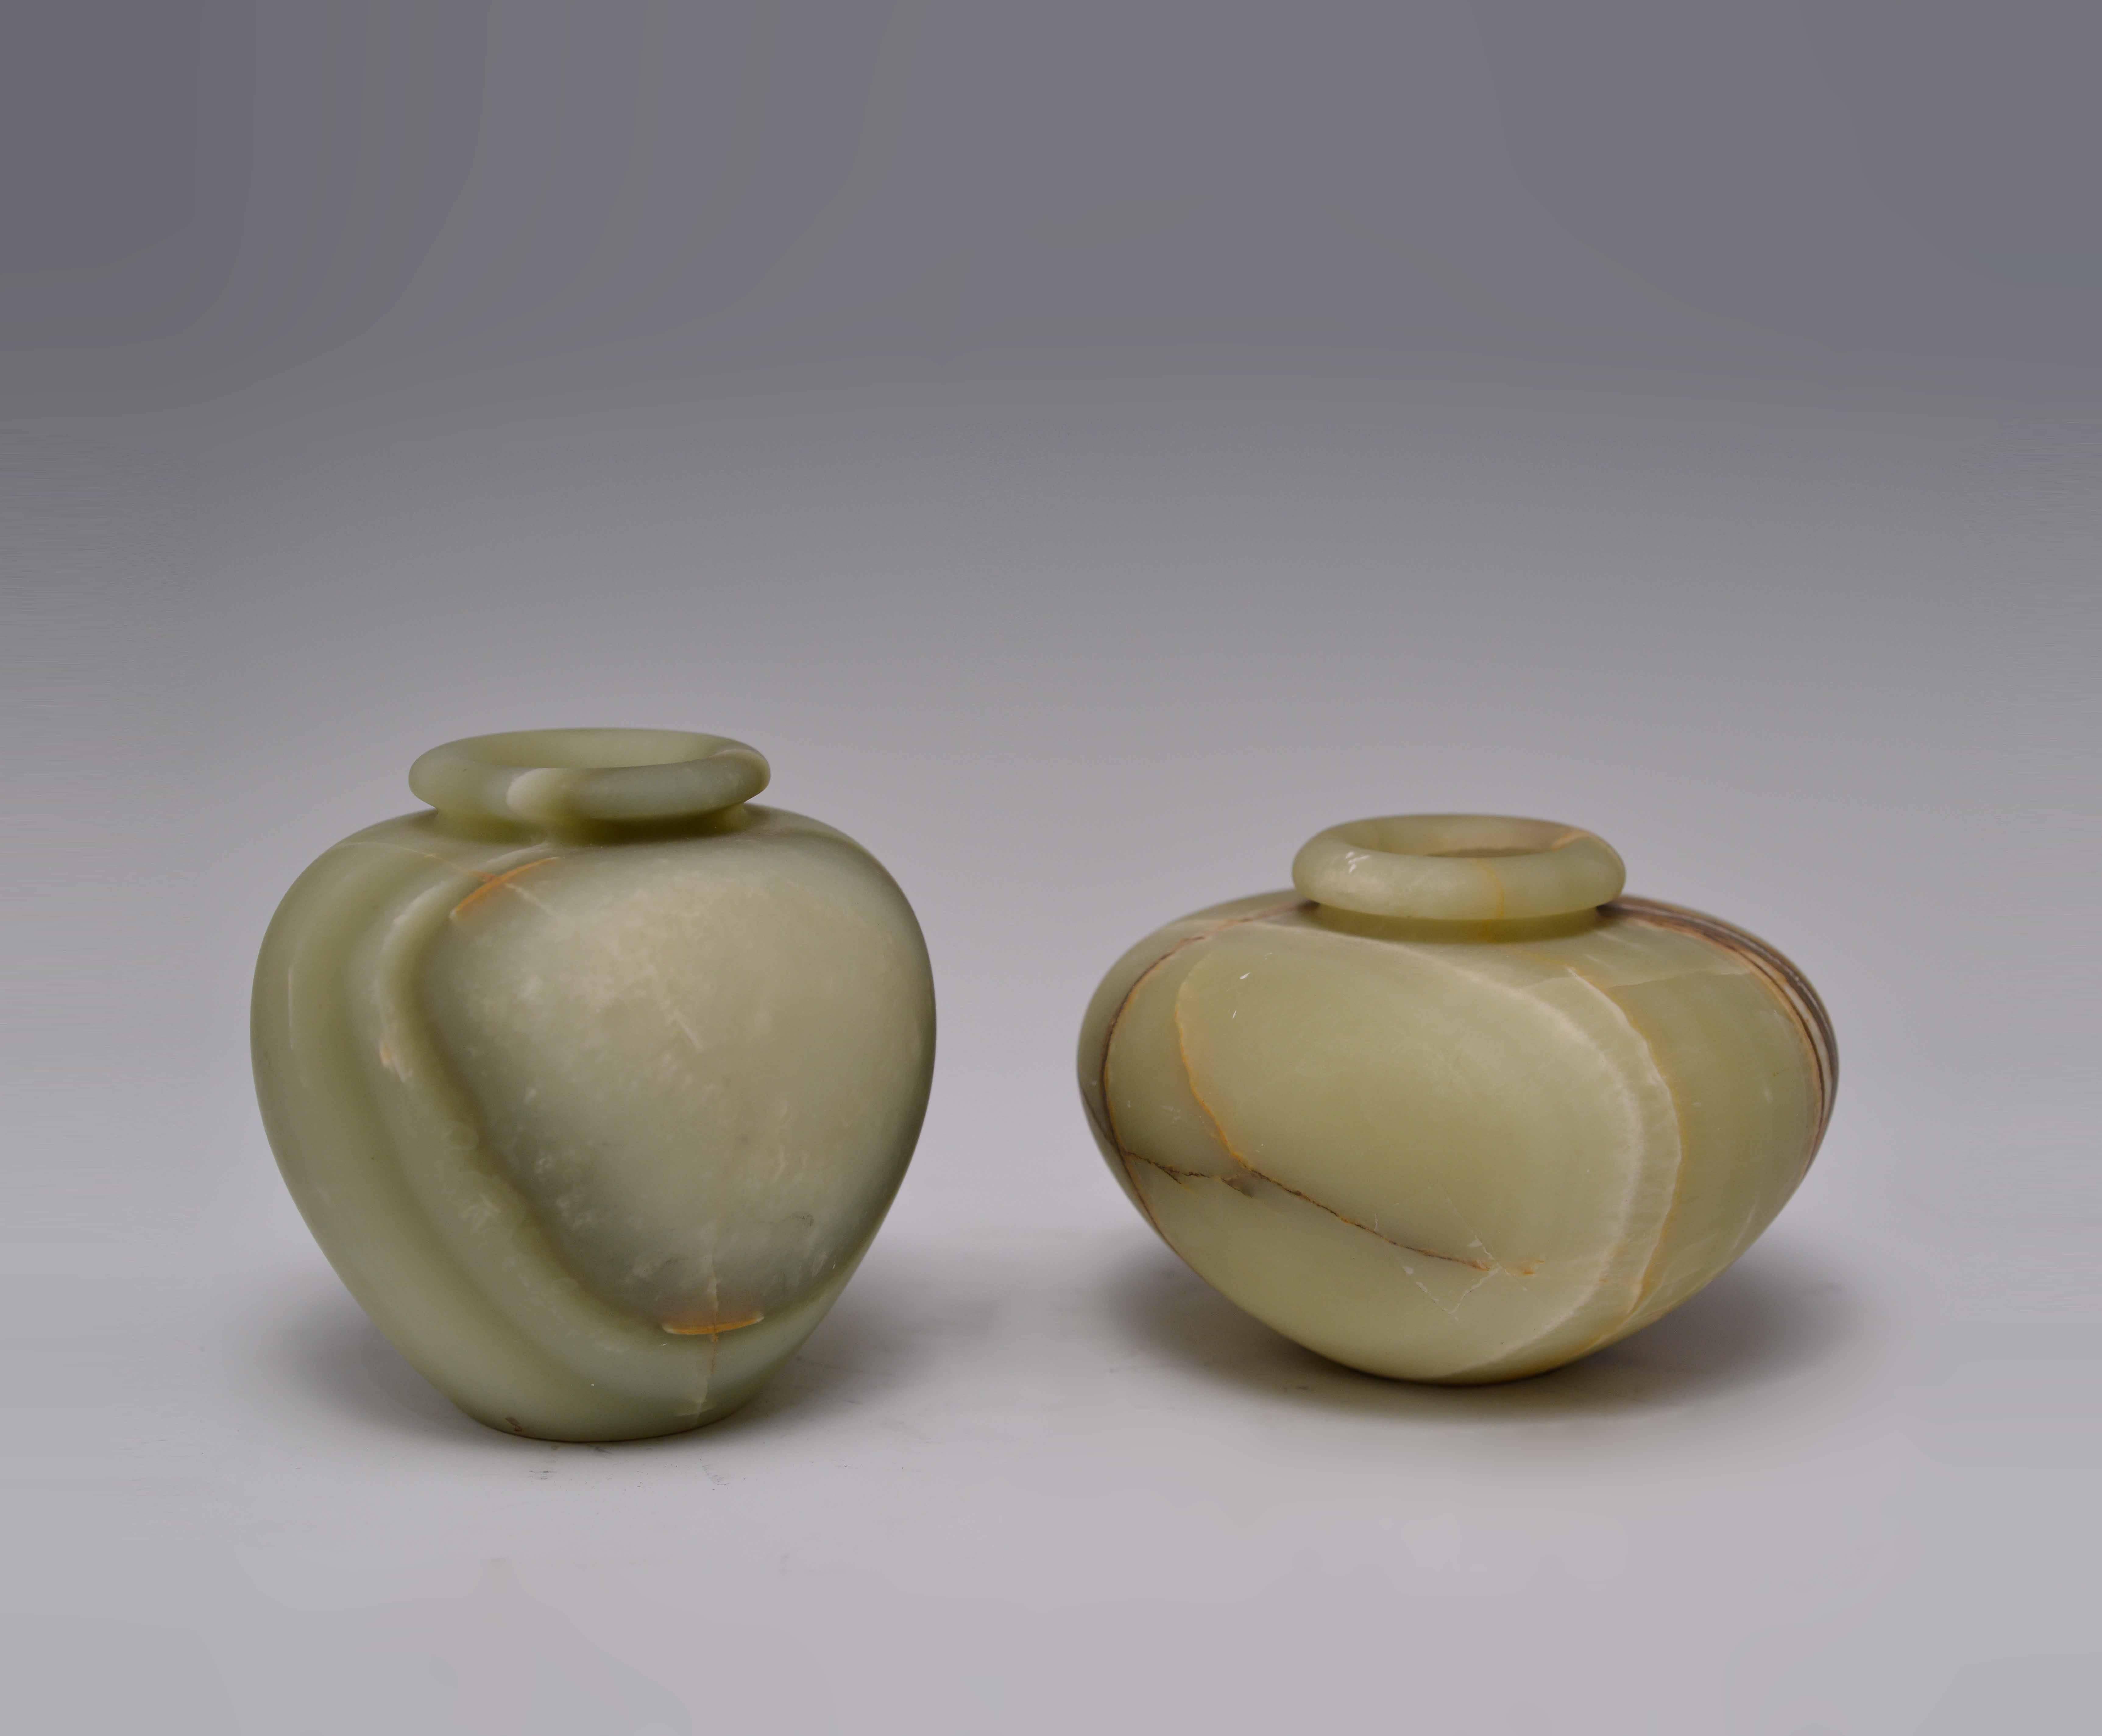 Gruppe von zwei geschnitzten Celadon-Jade-Baluster-Gefäßen mit schönen Jade-Adern, die den Körper durchziehen.
Maße: Links: 7 in. H x 5 in. W
Rechts: 6 Zoll. H x 6 in. W.